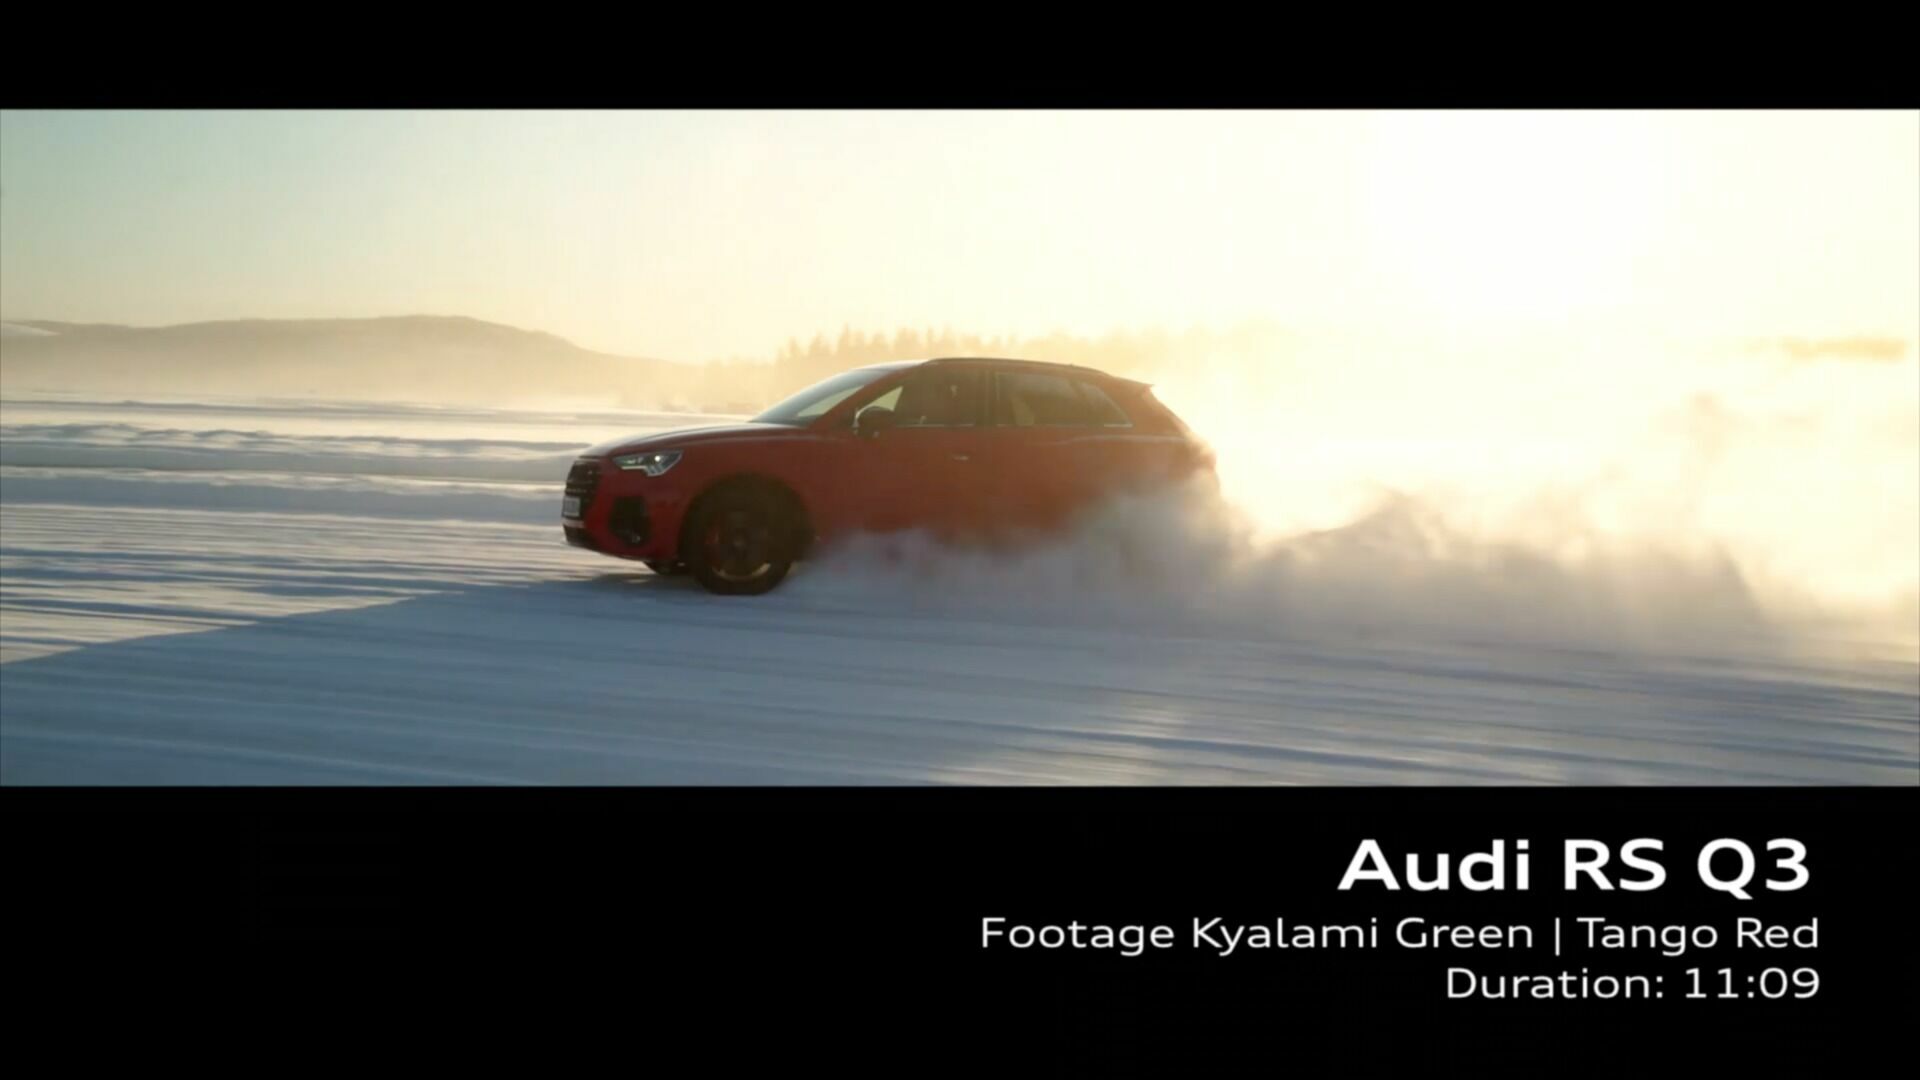 Audi RS Q3 on location (Footage)